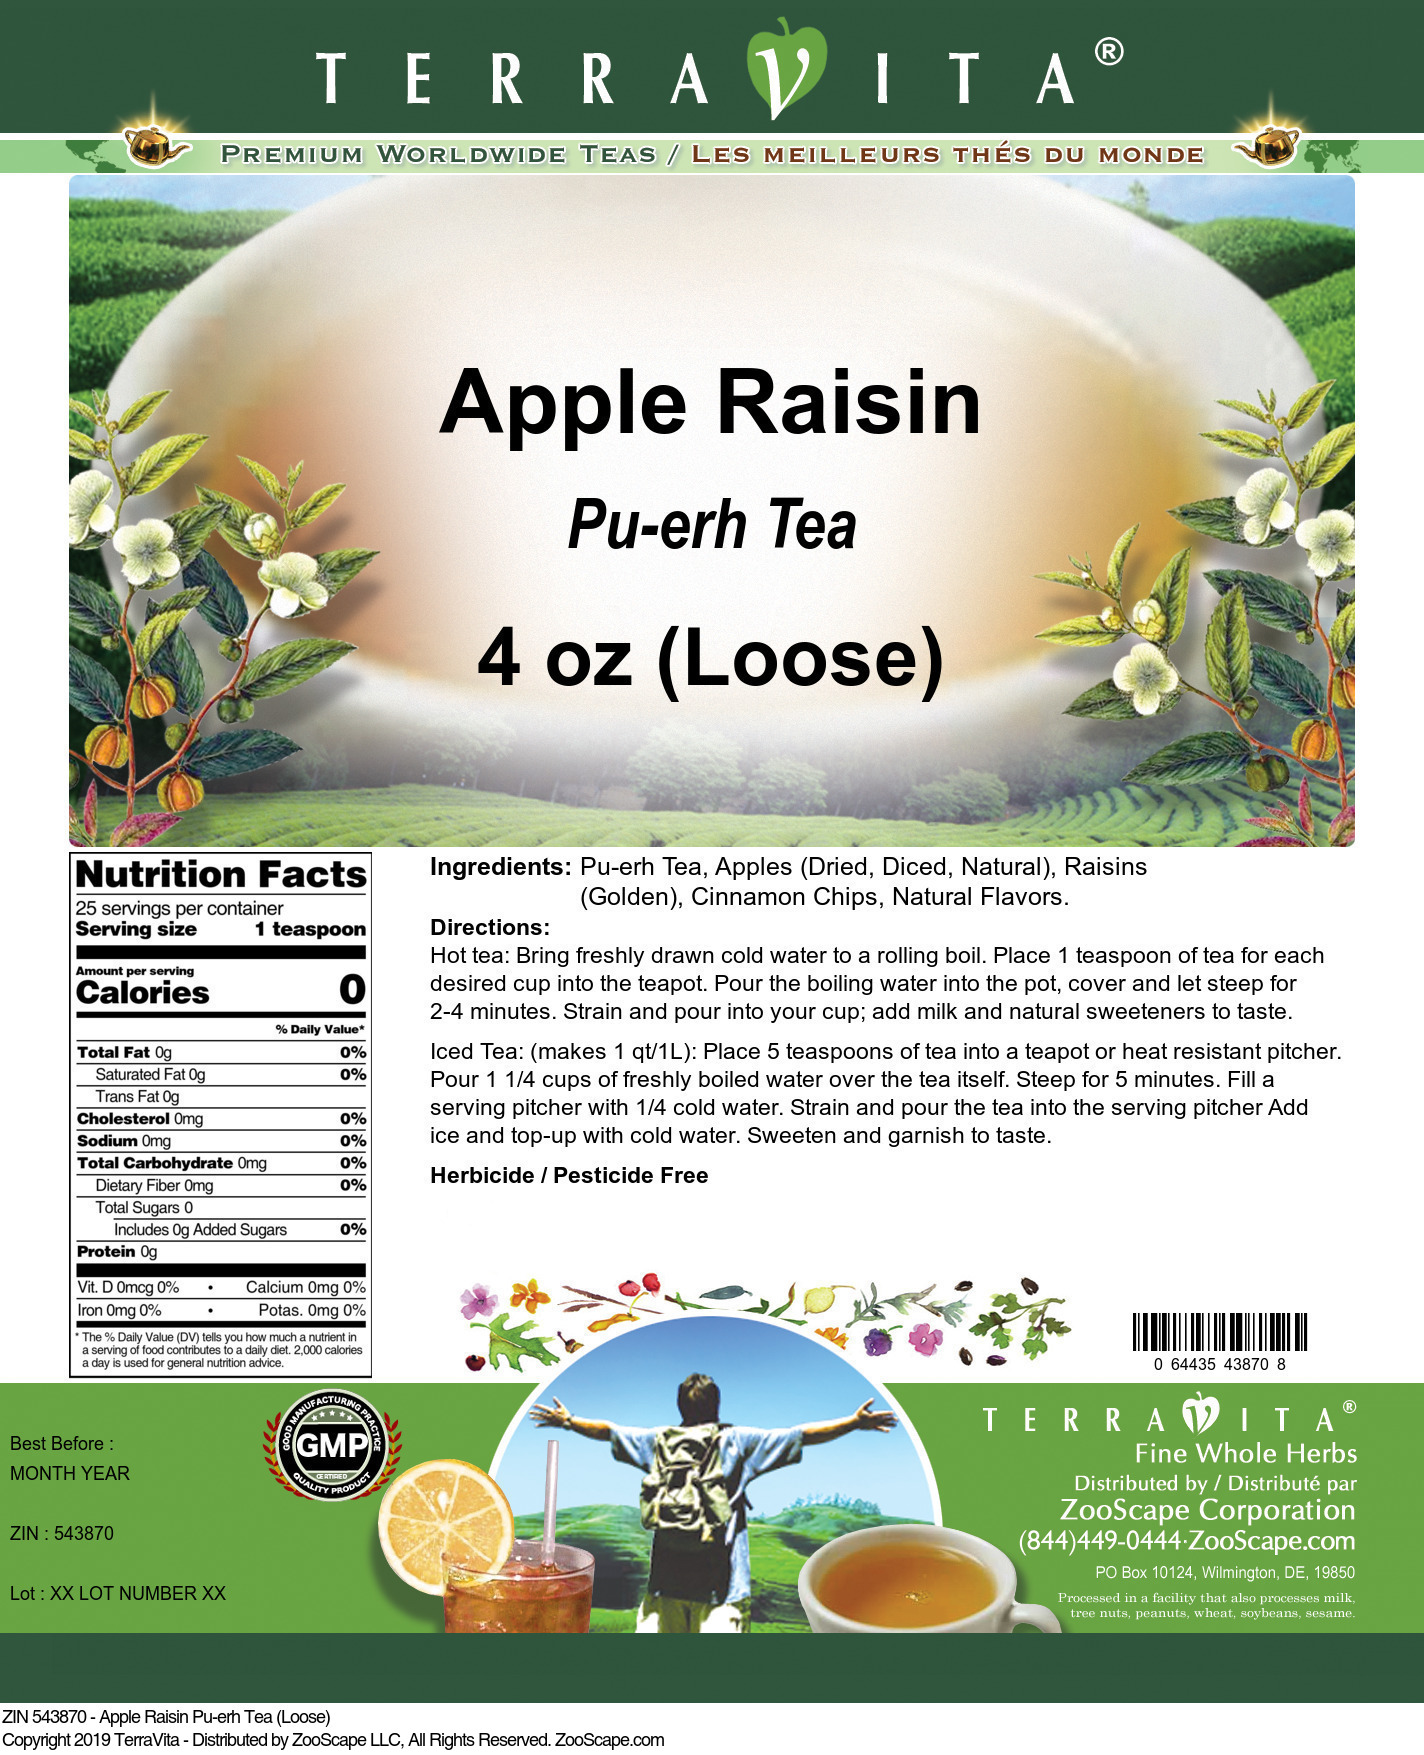 Apple Raisin Pu-erh Tea (Loose) - Label